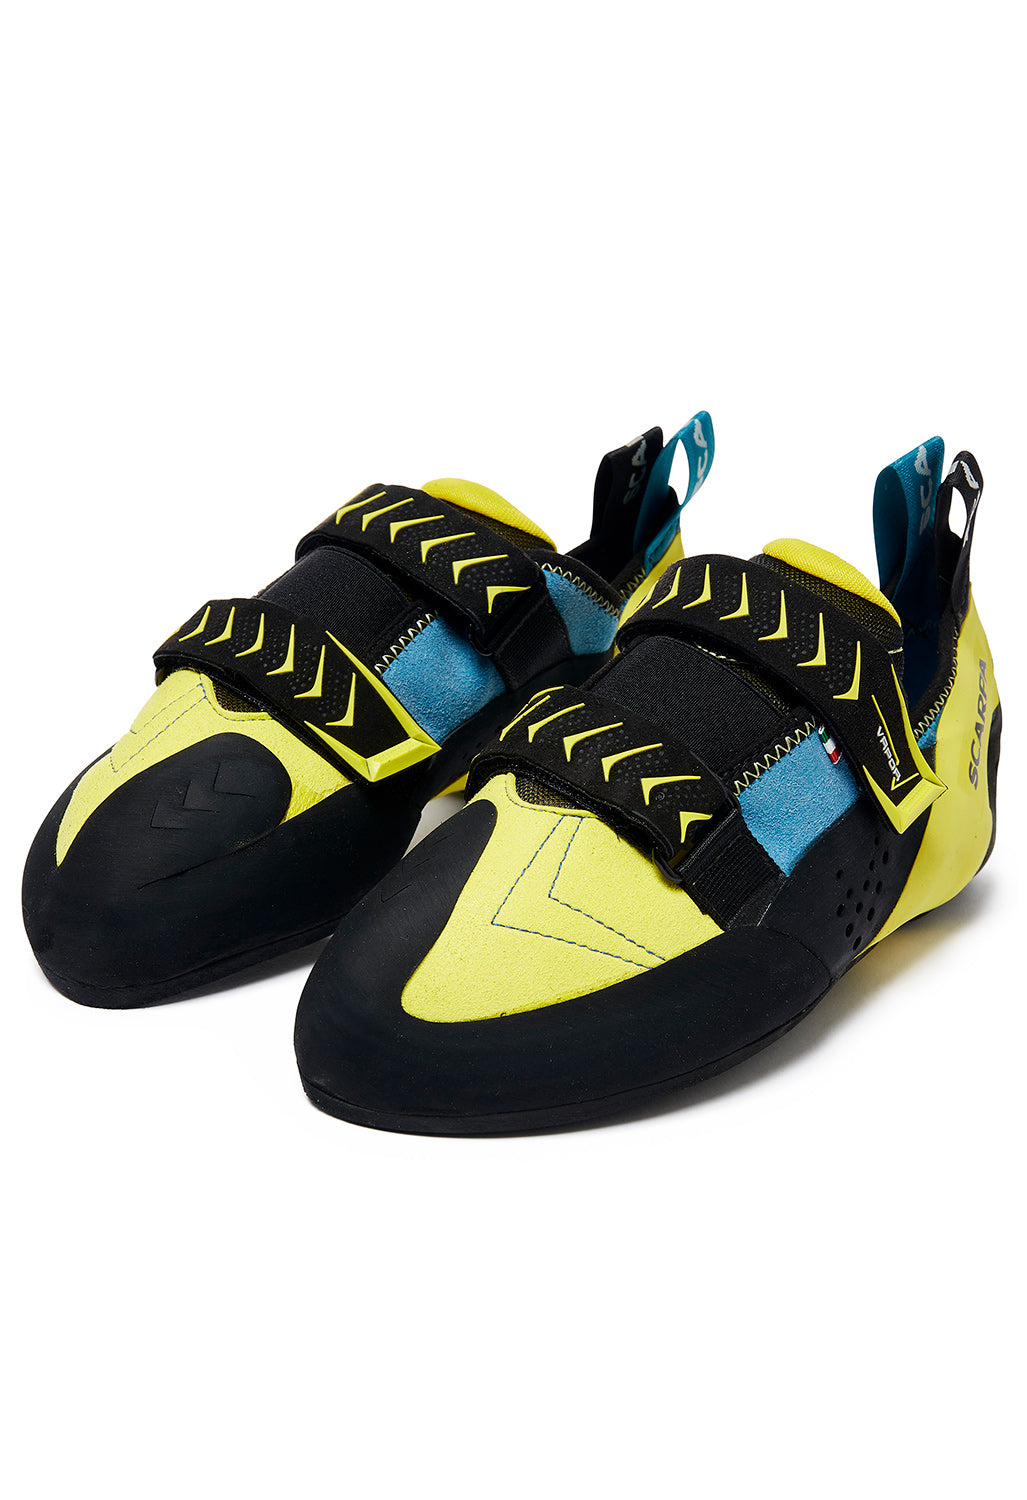 Scarpa Vapour V Men's Shoes - Ocean/Yellow